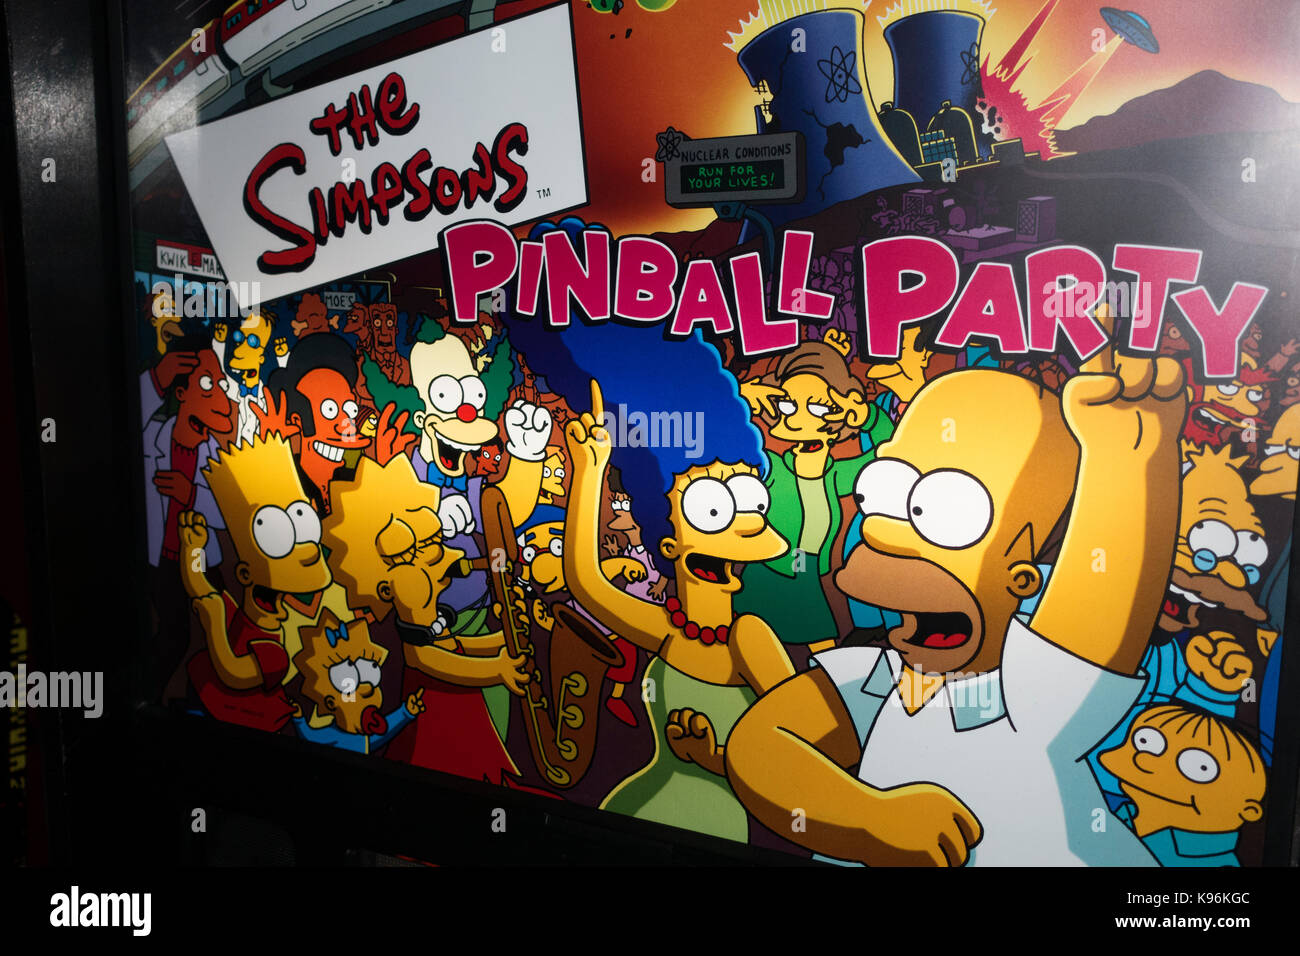 The Simpsons pinball party chapiteau de la comédie animée sitcom série tv. St paul minnesota mn usa Banque D'Images